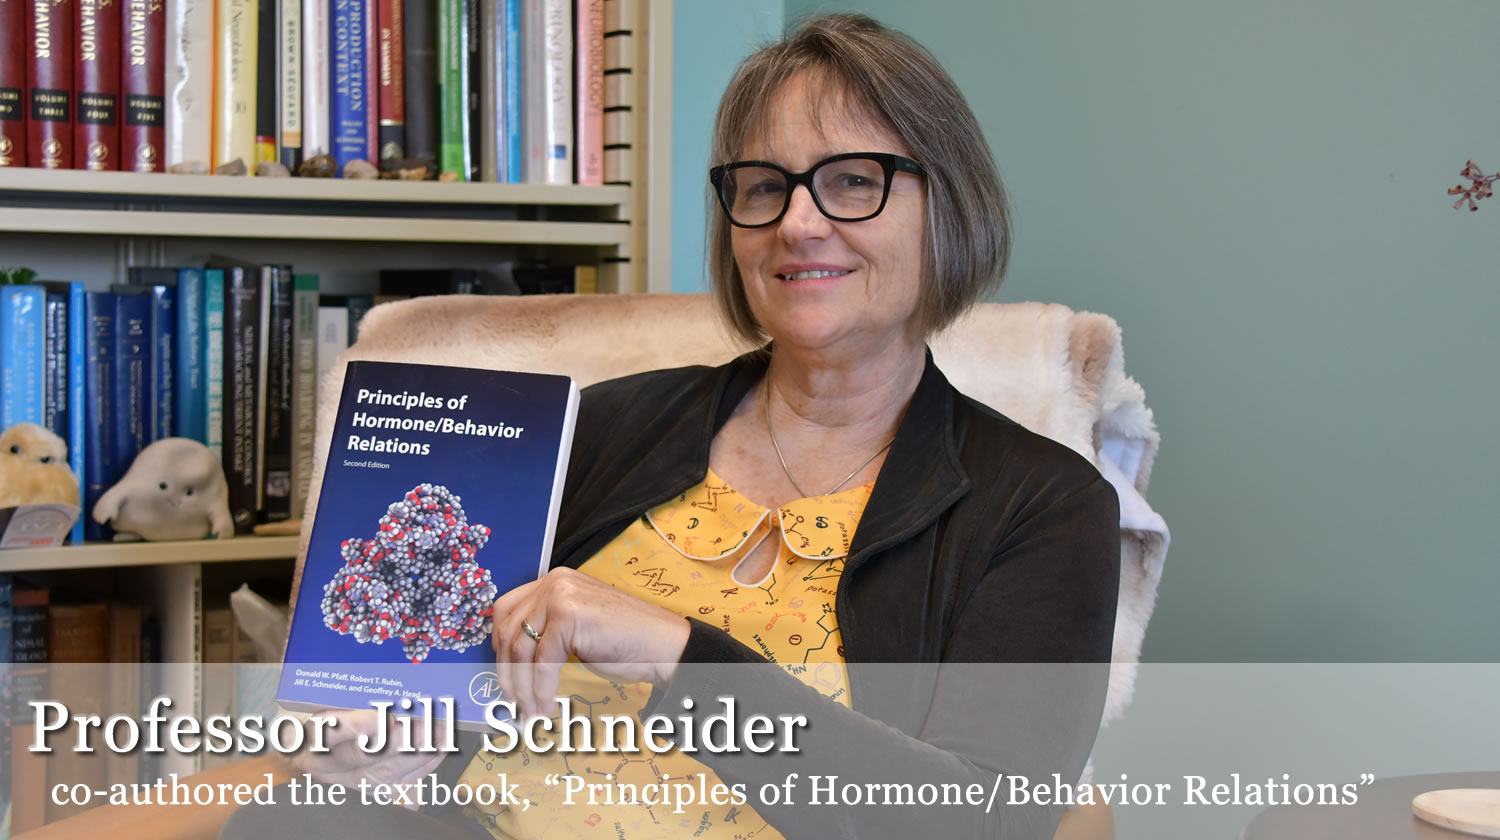 Professor Jill Schneider co-authored textbook